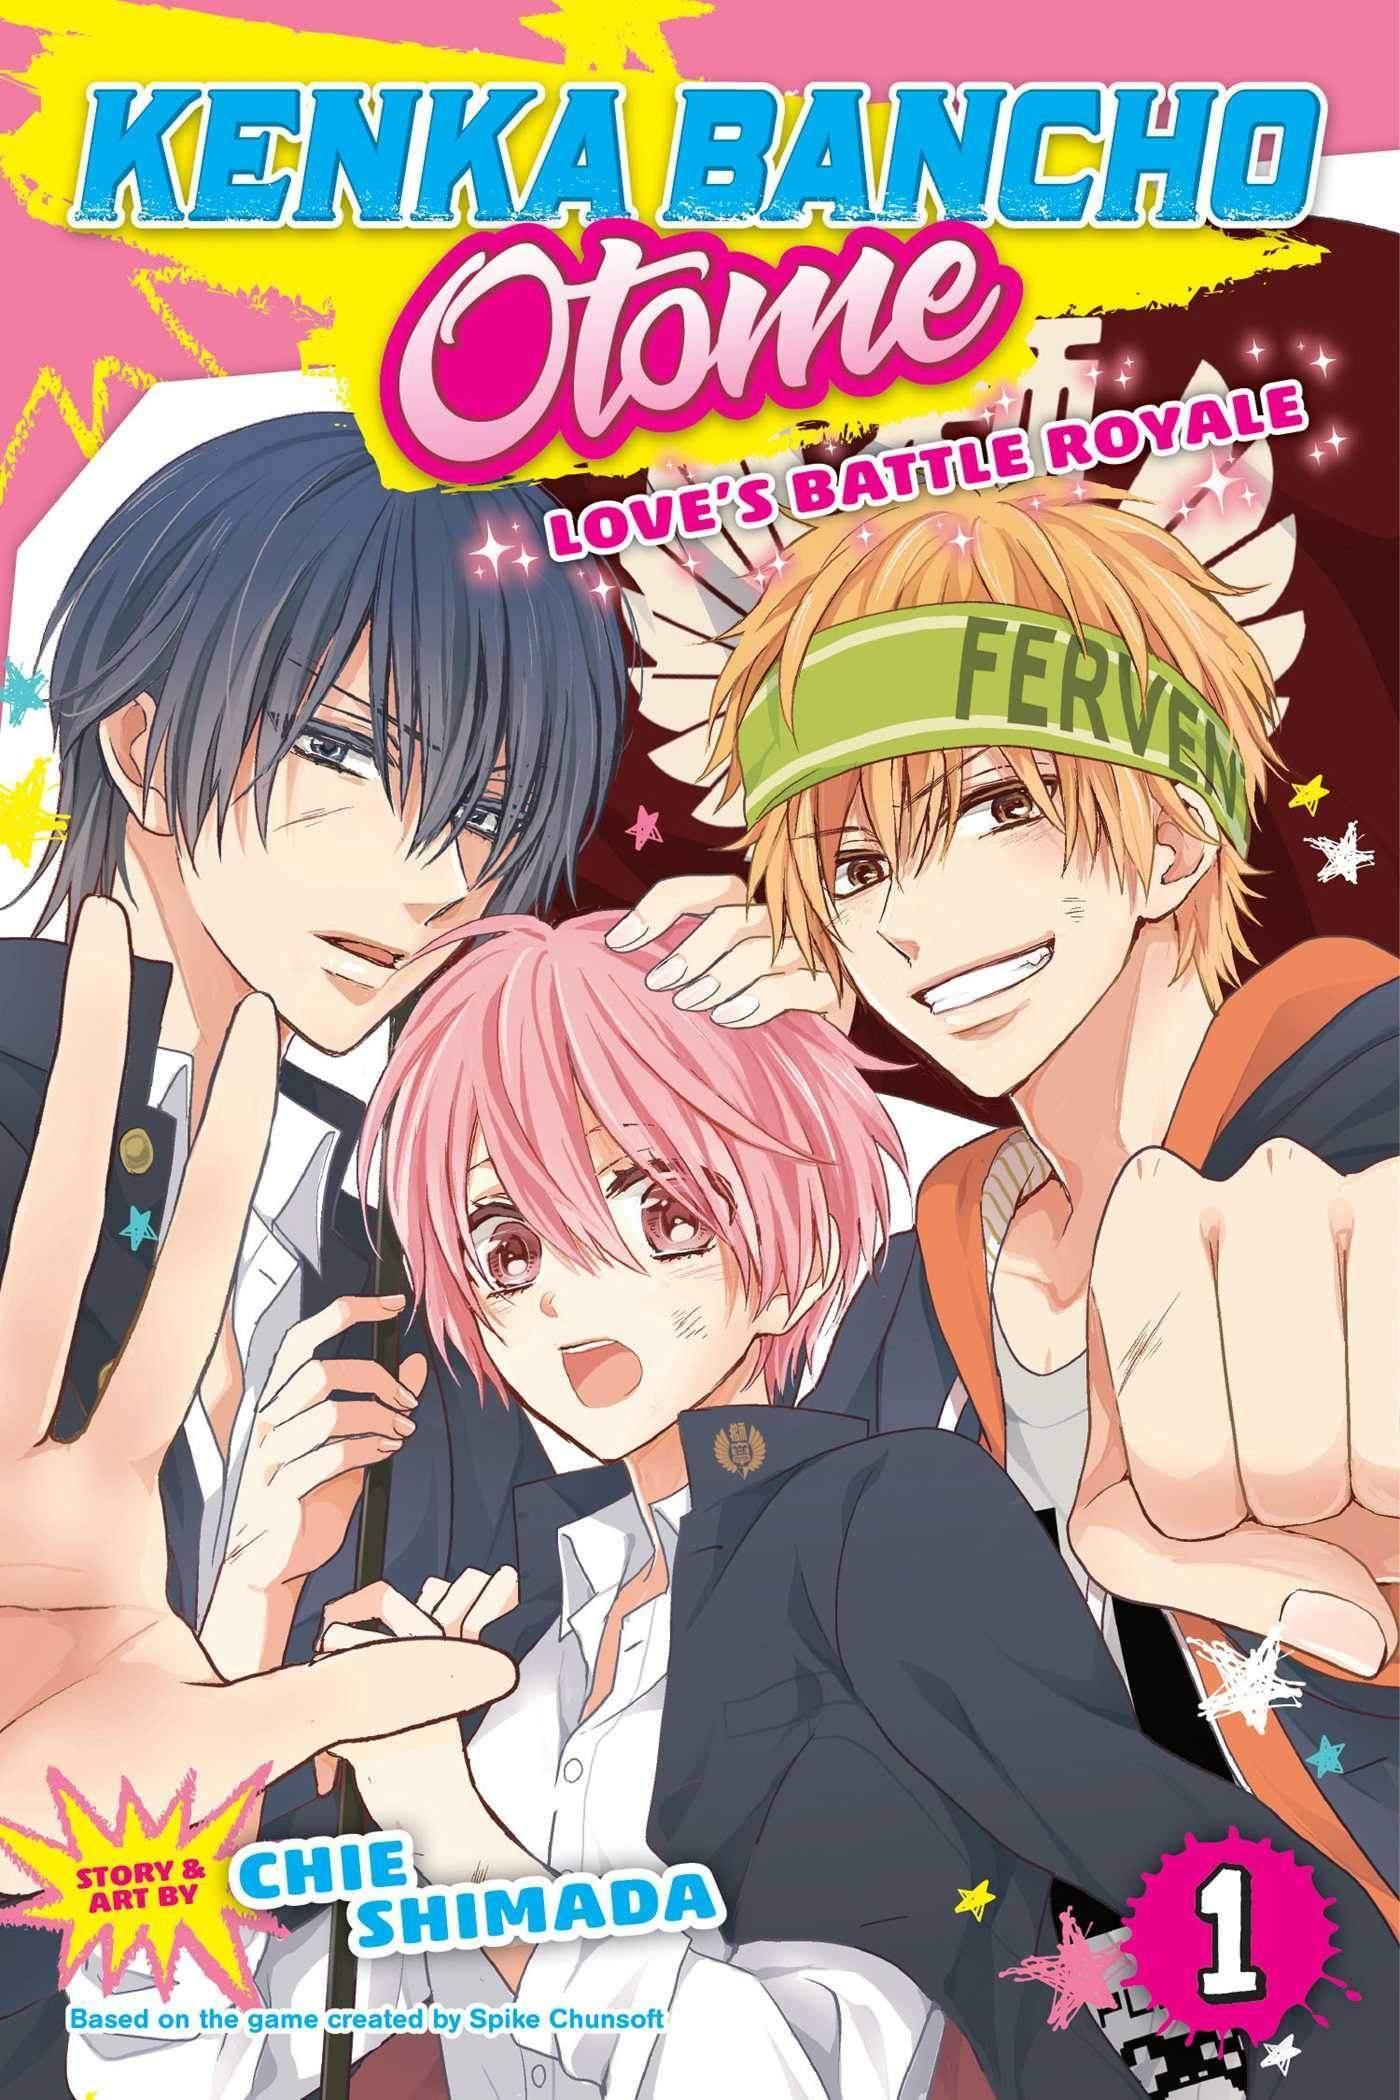 Kenka Bancho Otome: Love's Battle Royale (Manga) Vol. 1 - Tankobonbon